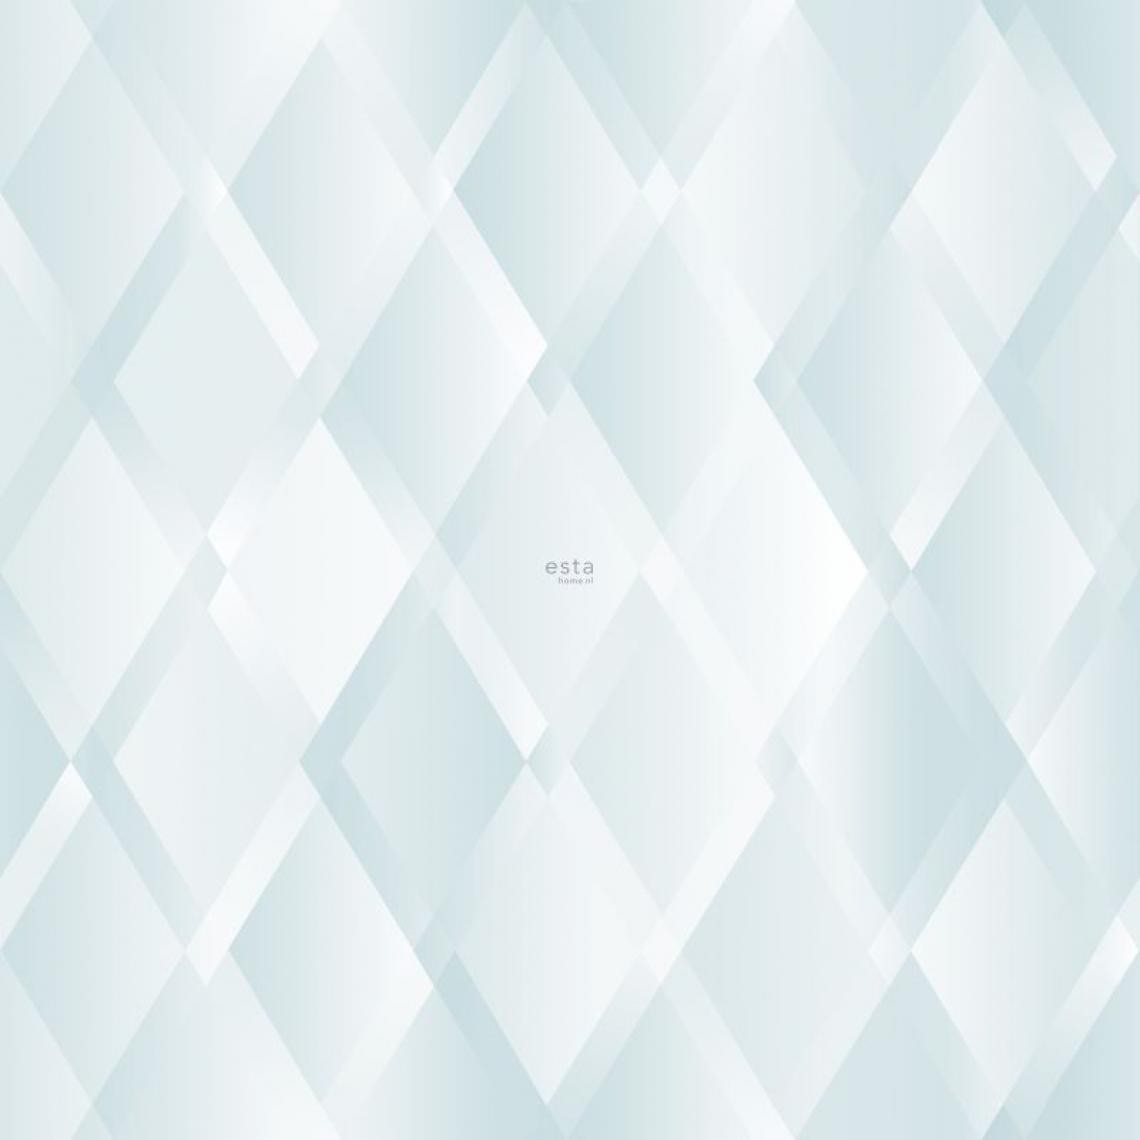 ESTAhome - ESTAhome papier peint panoramique rhombus diamant à effet dégradé bleu et vert menthe - 158860 - 279 x 279 cm - Papier peint